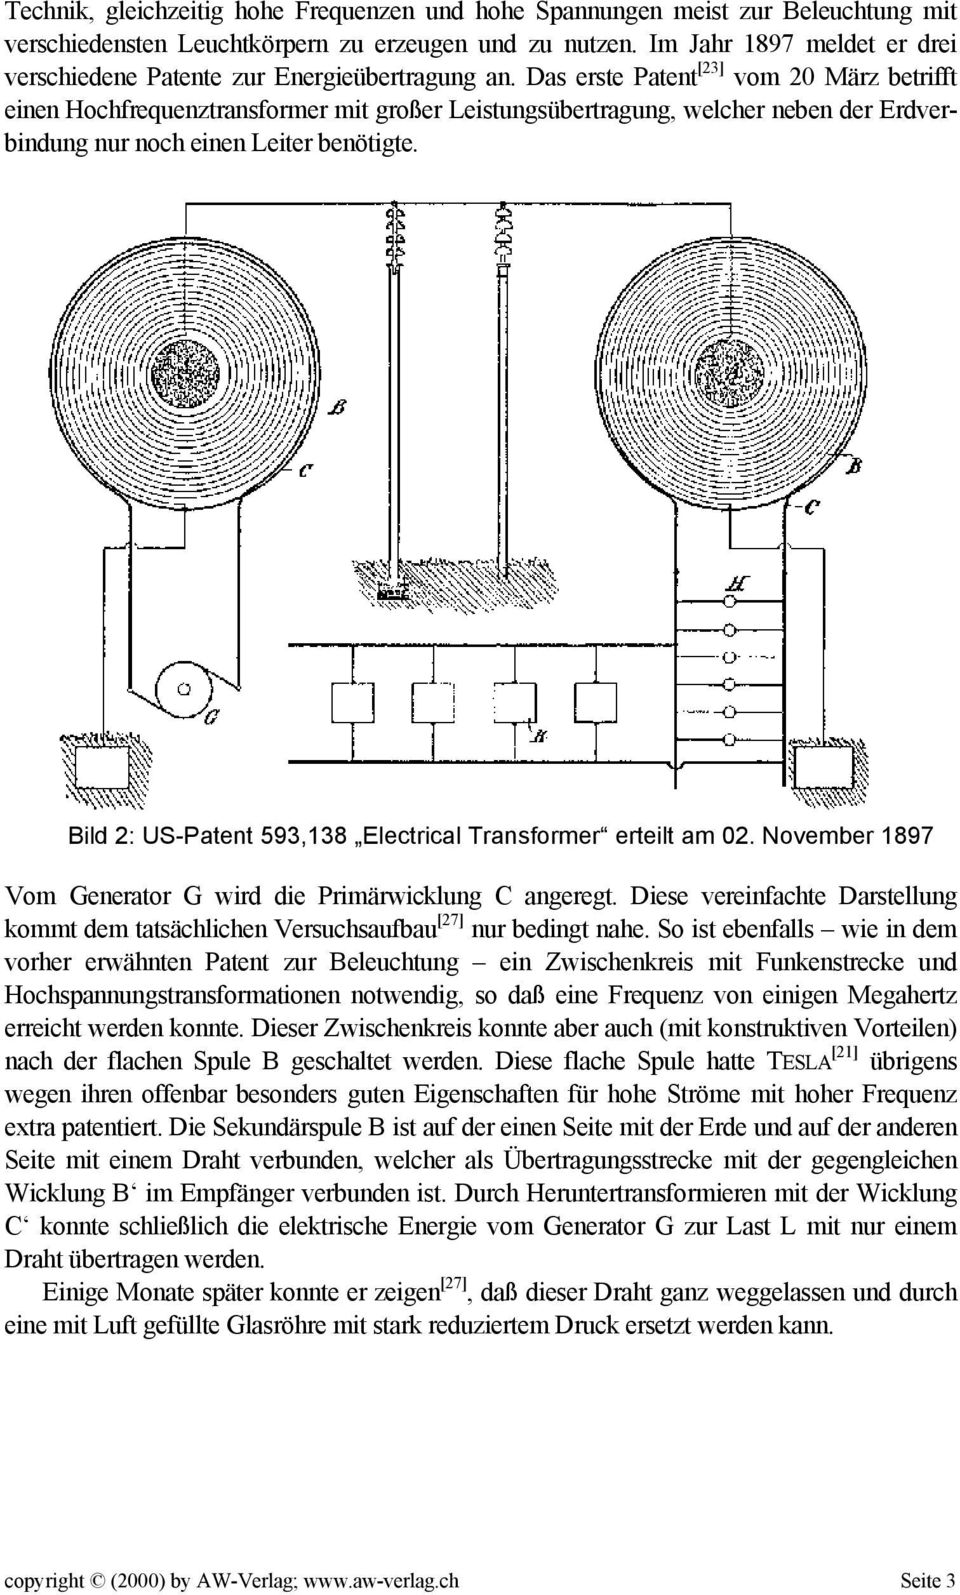 Das erste Patent [23] vom 20 März betrifft einen Hochfrequenztransformer mit großer Leistungsübertragung, welcher neben der Erdverbindung nur noch einen Leiter benötigte.